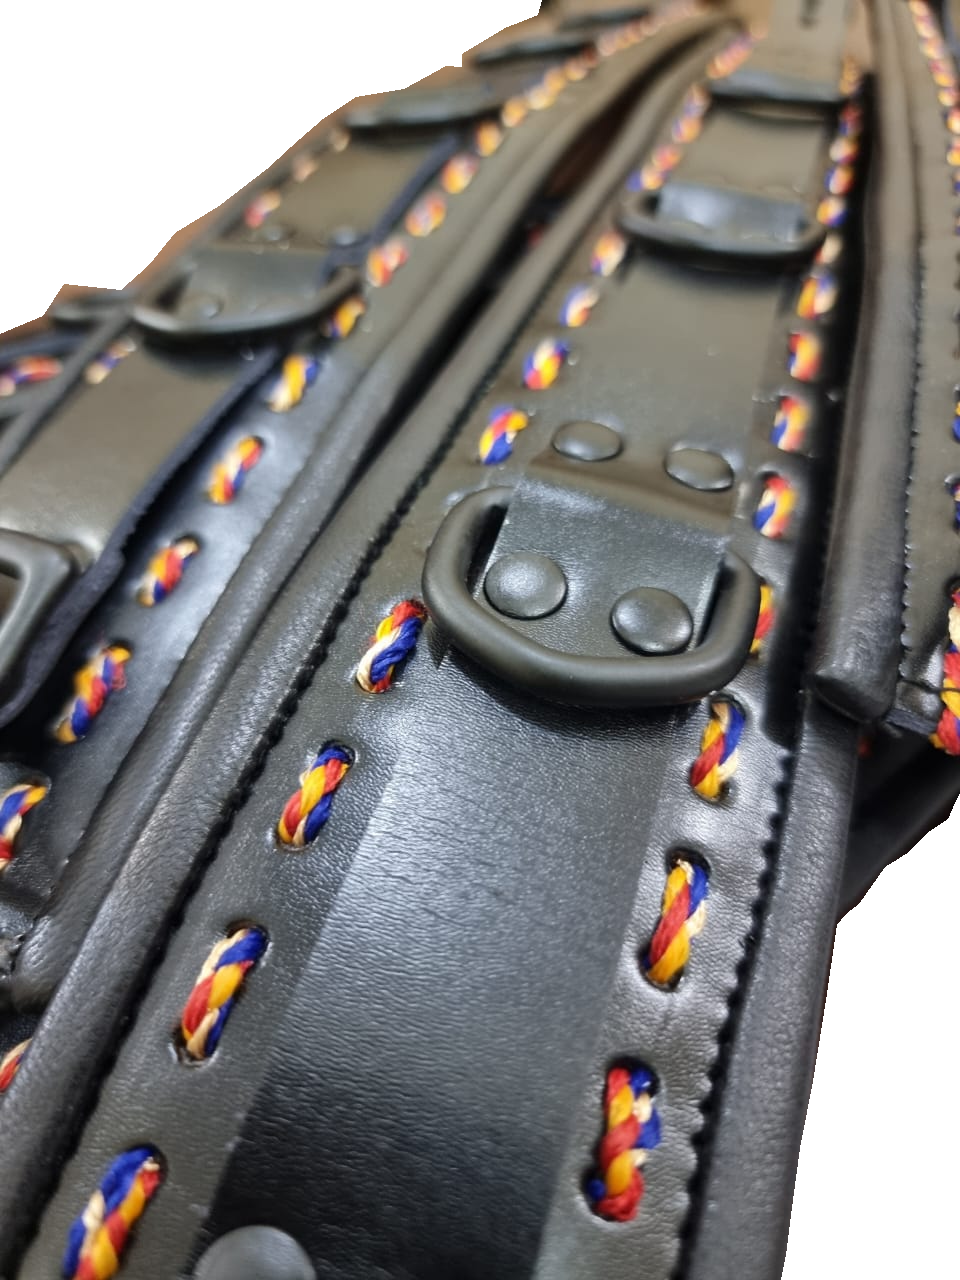 New Unique Design- Black Leather with Multi-Color Thread Complete Set of 7 Restraints - (REST7-BLK-RAIN).